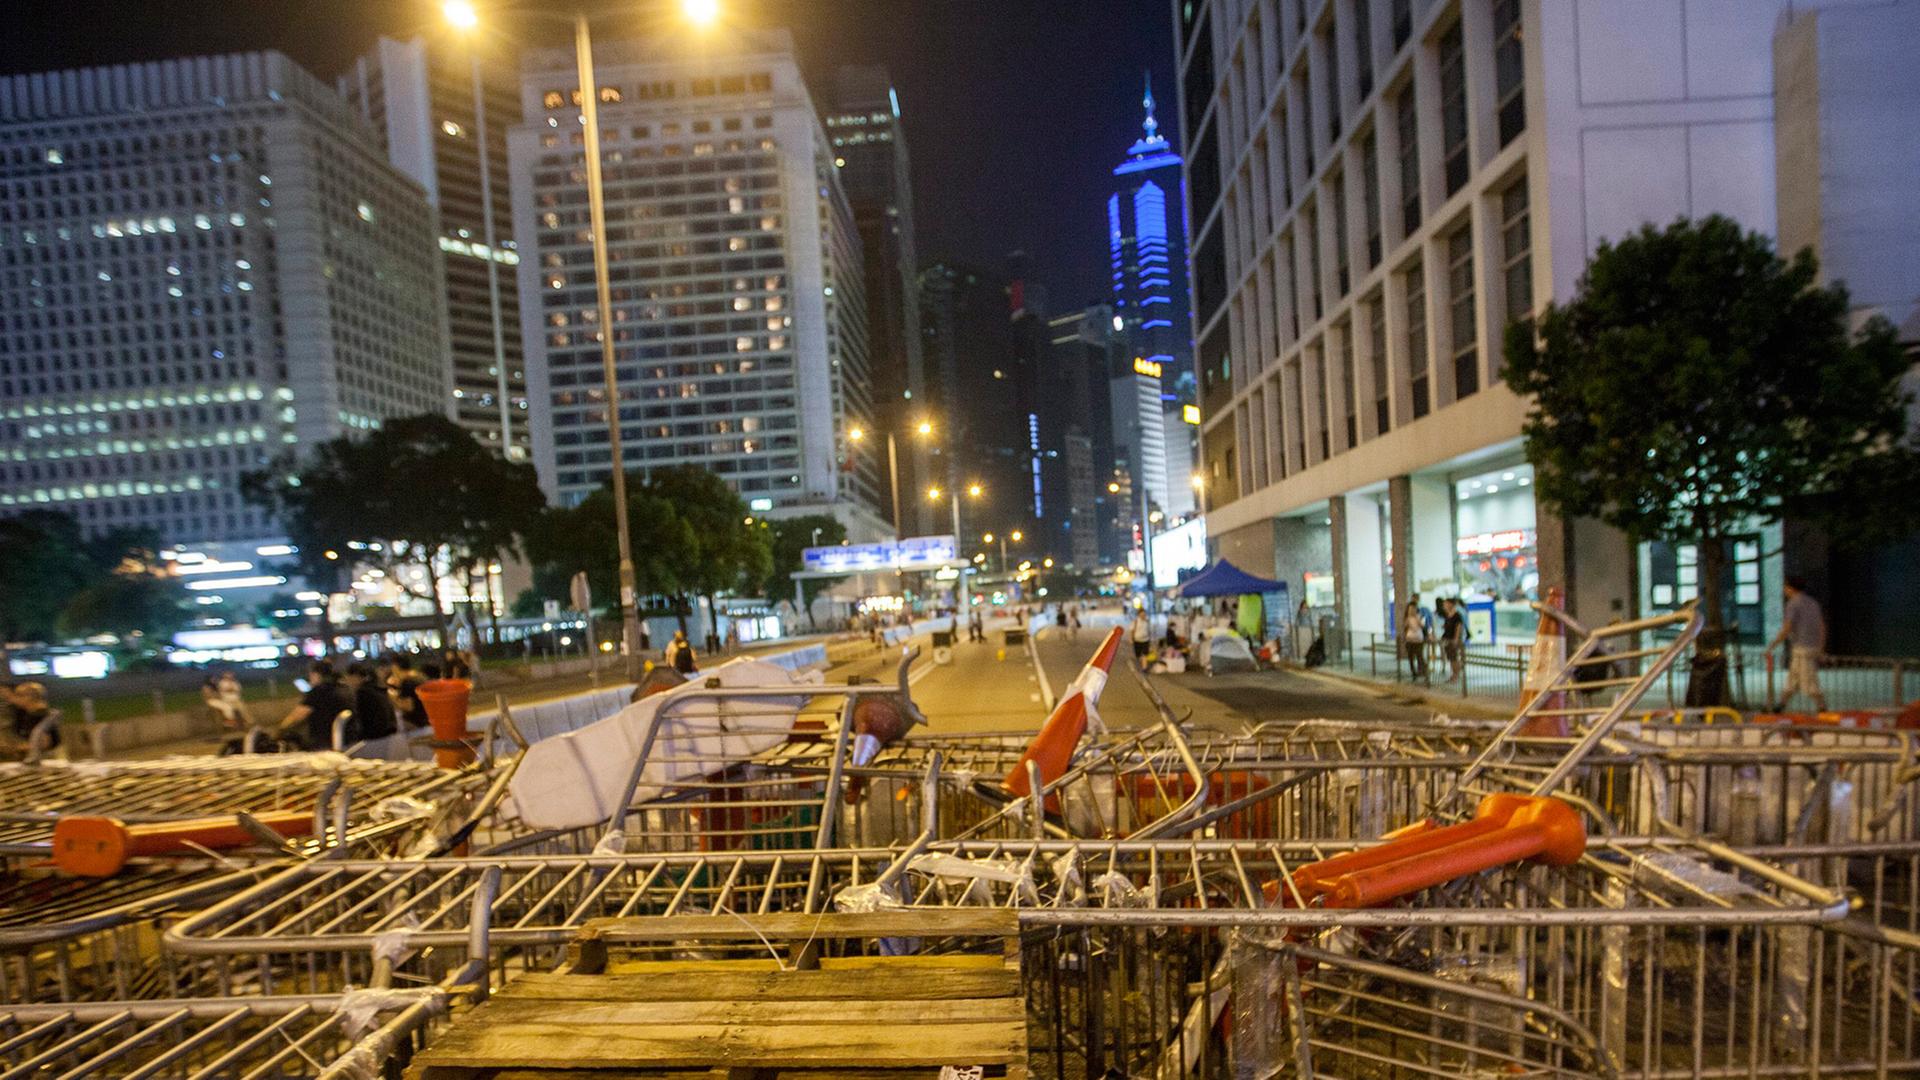 Immer noch Barrikaden der Occupy-Central-Bewegung in Hongkong